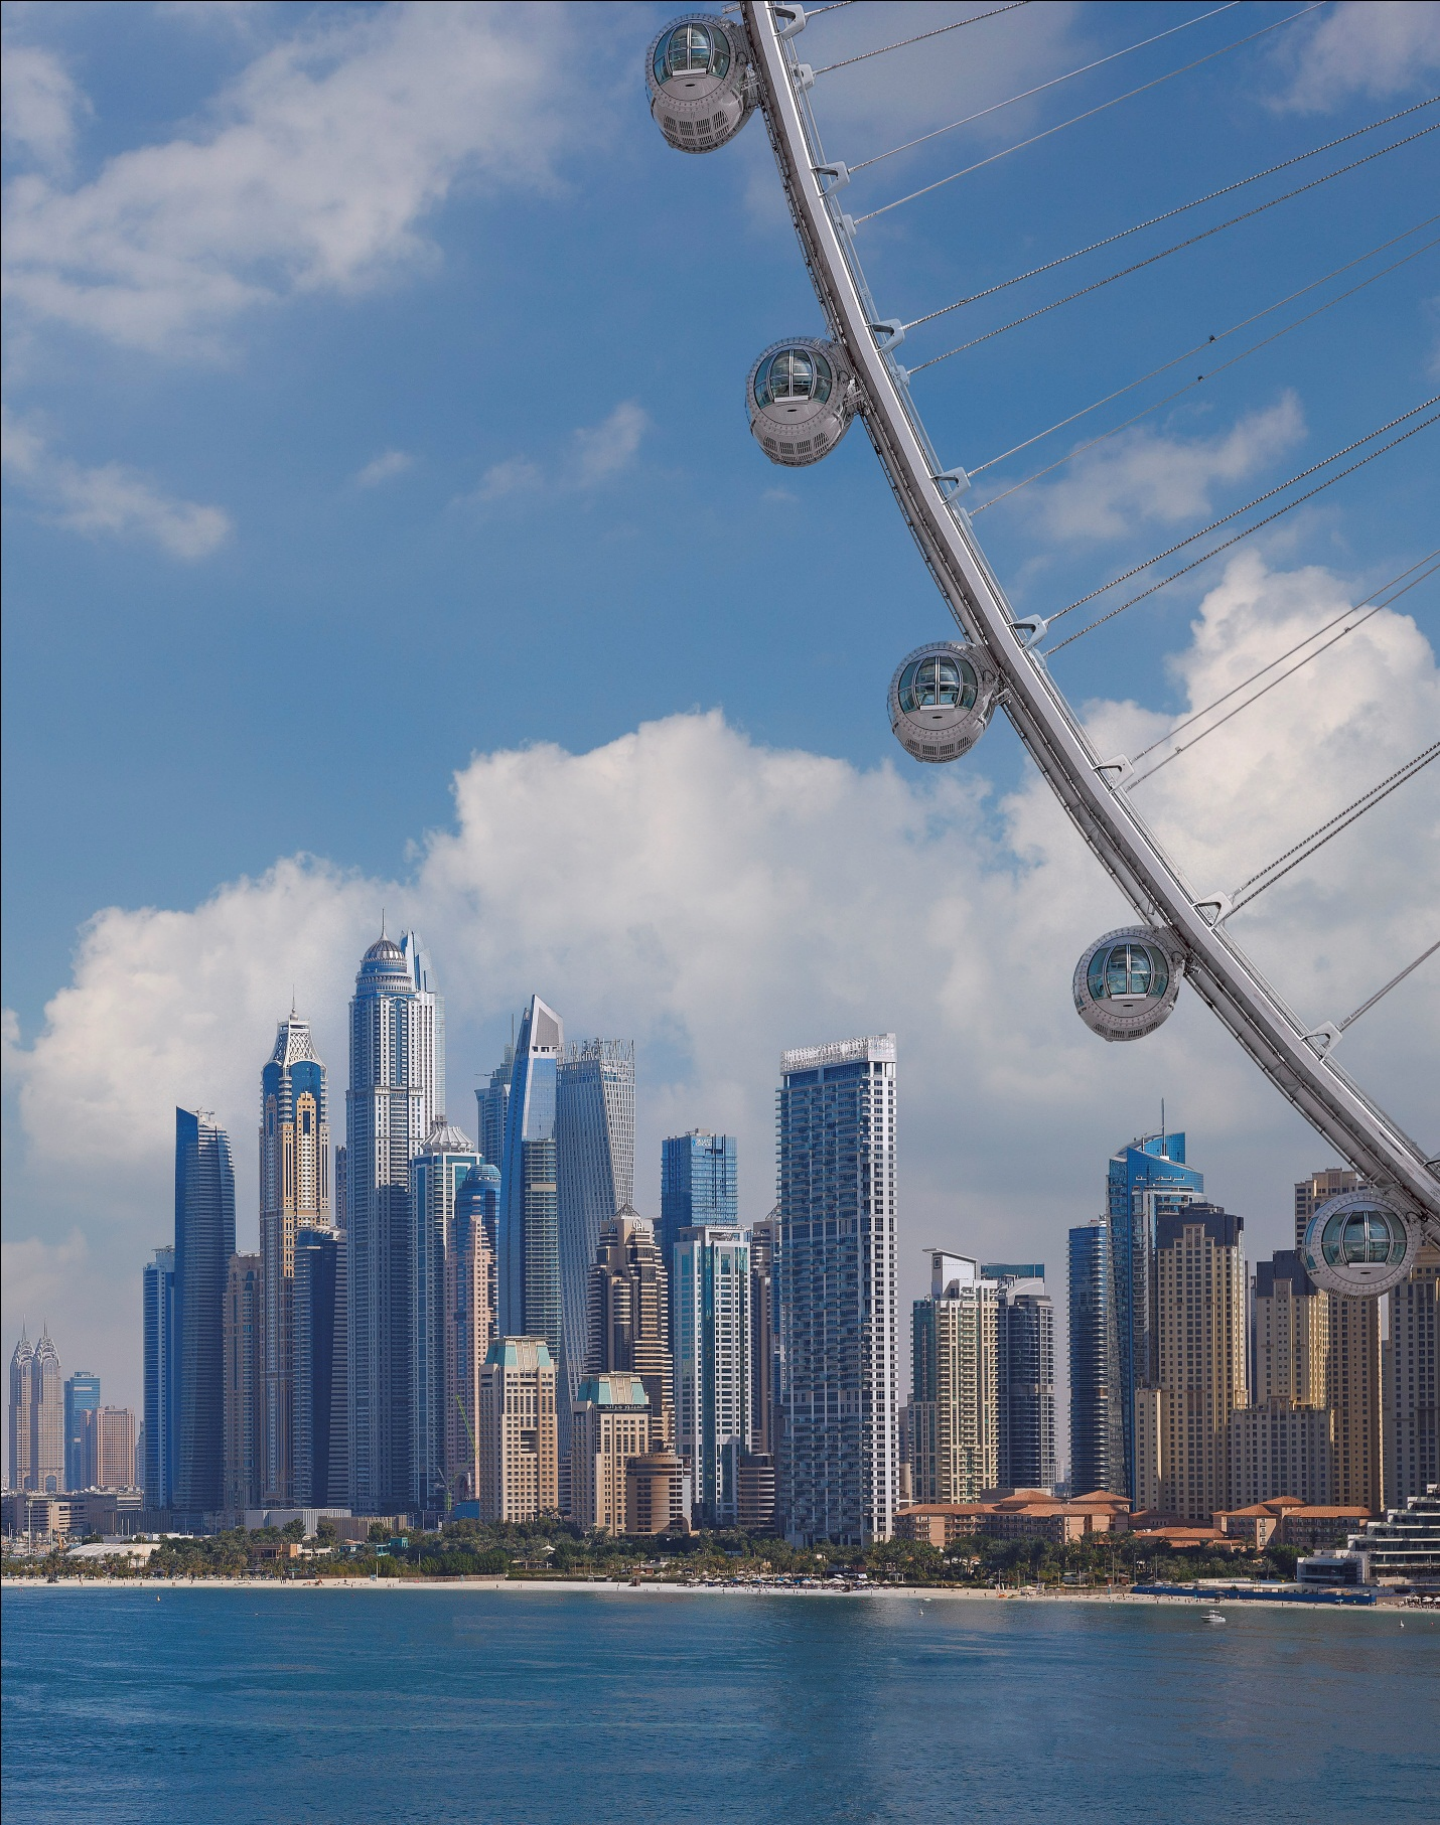 世界最高摩天轮迪拜之眼摩天轮将于10月21日开业